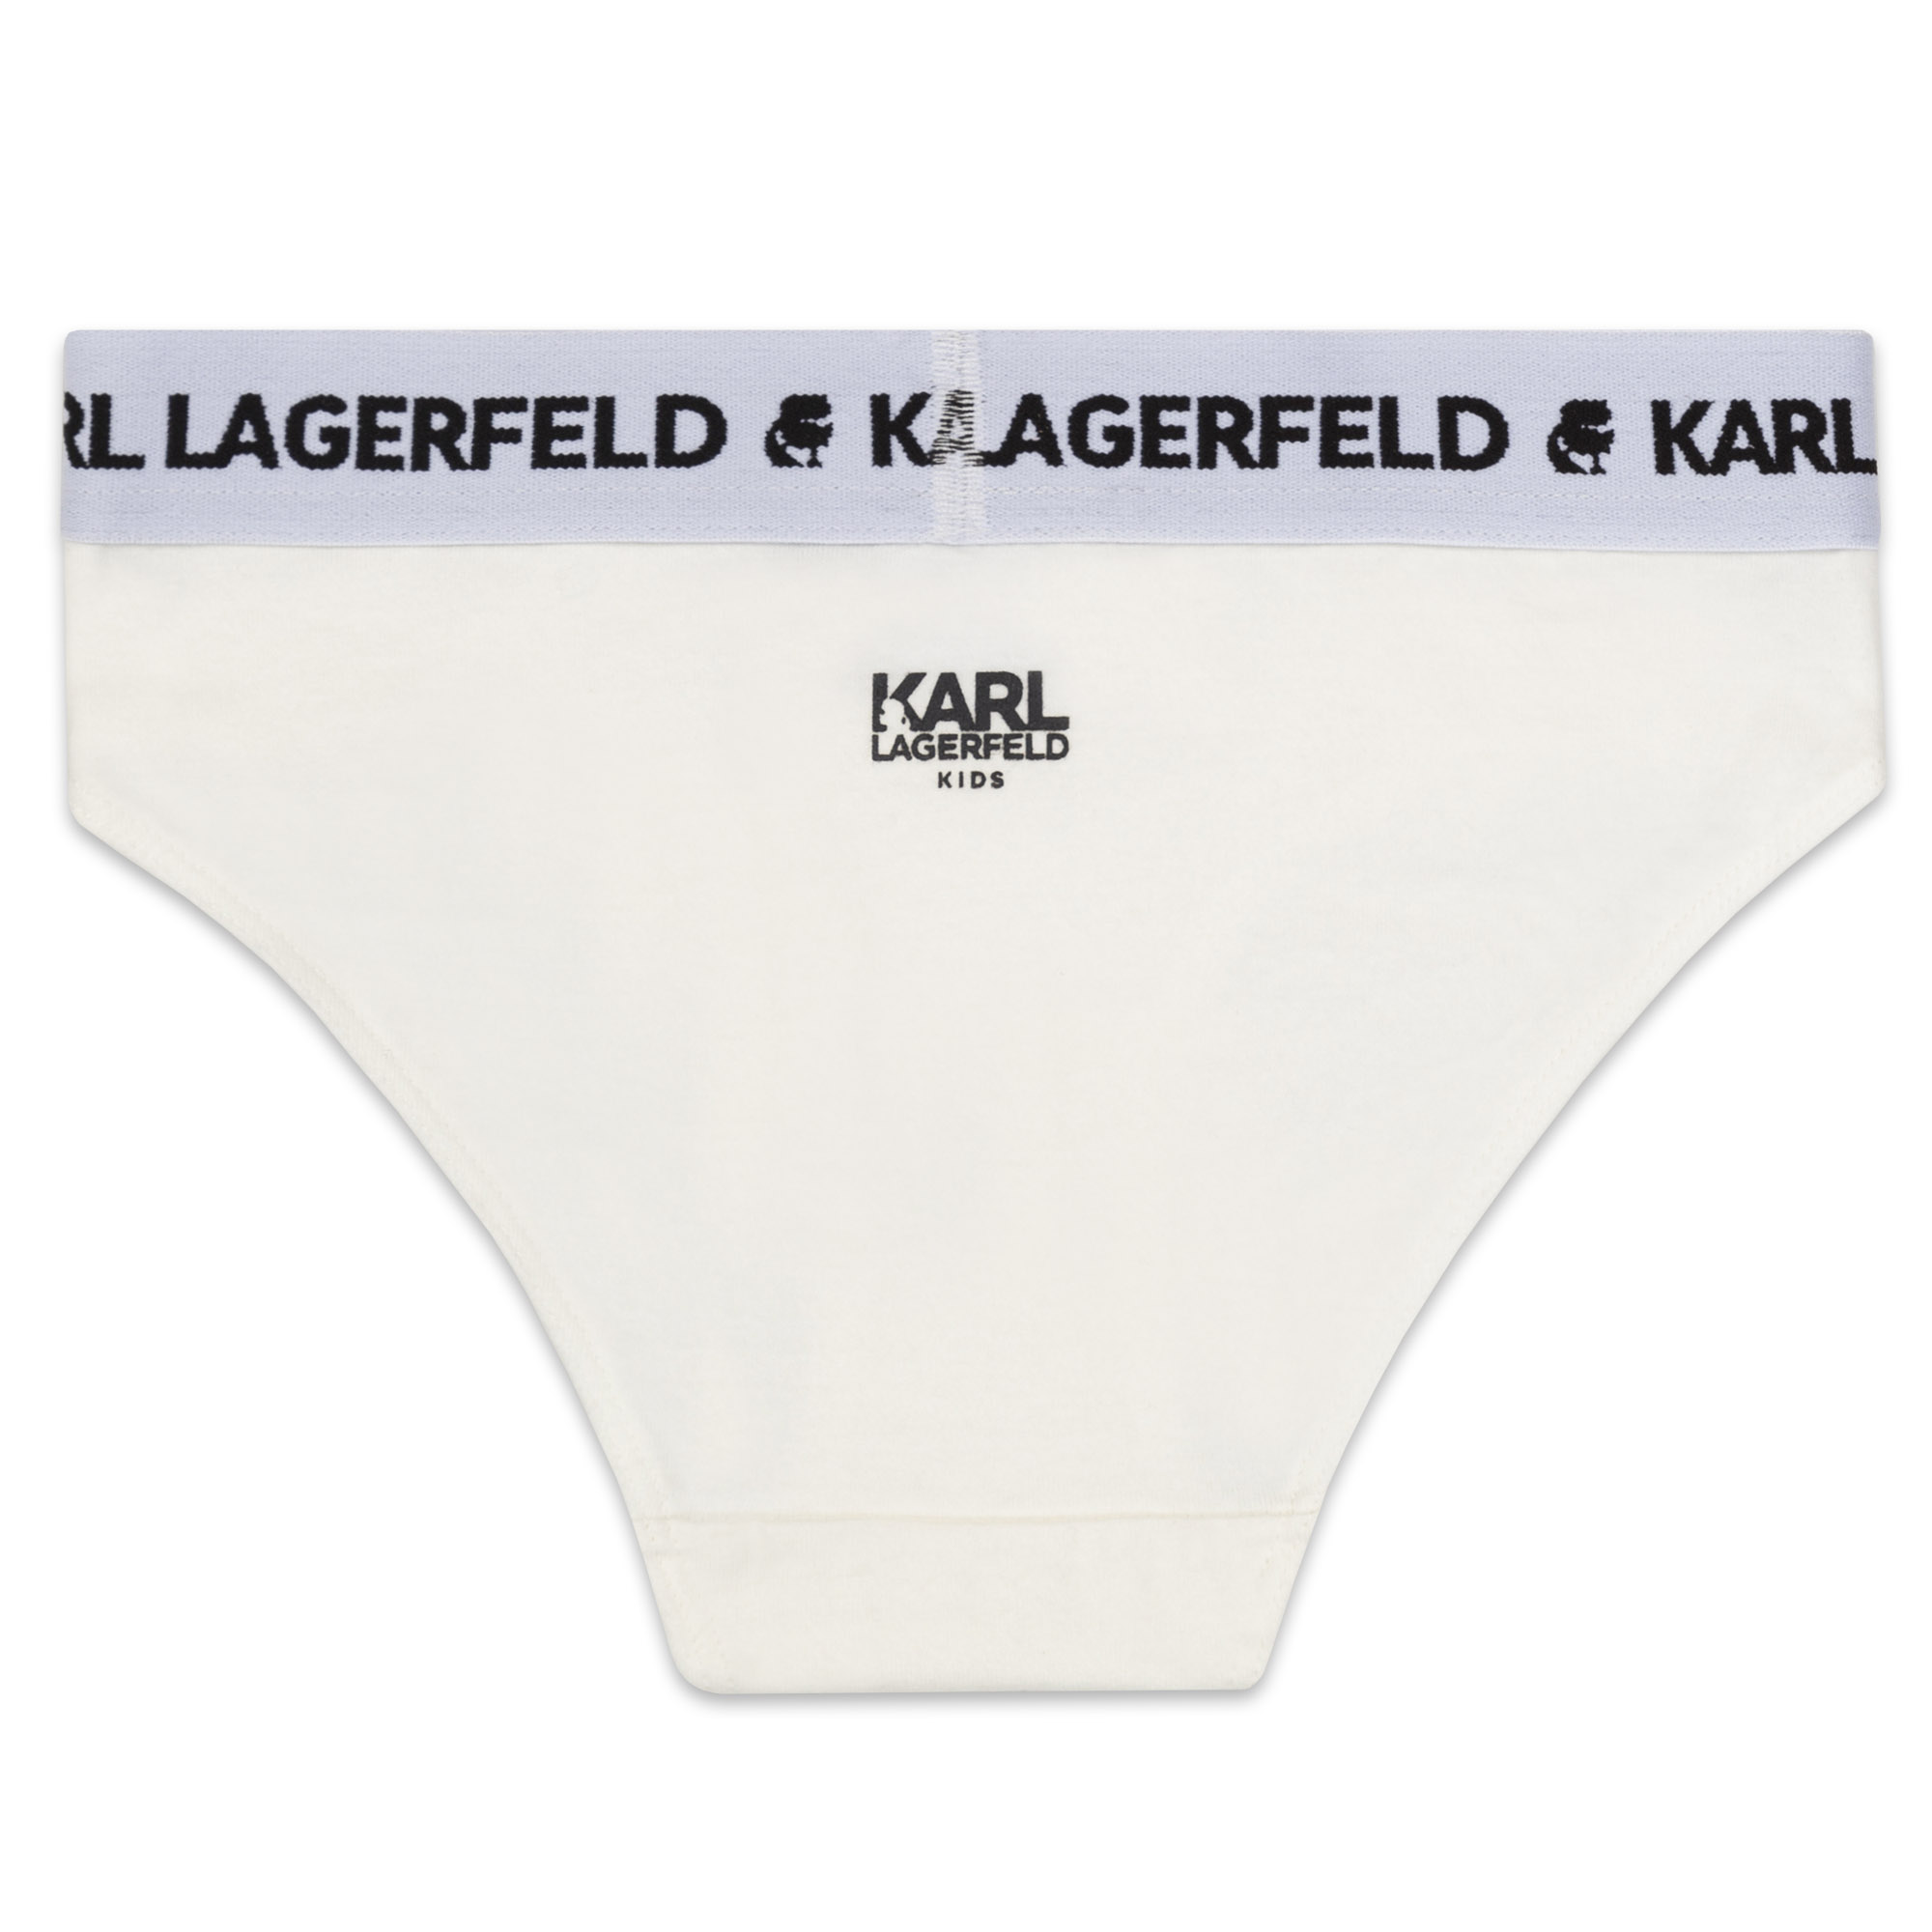 Pack de 2 calzoncillos algodón KARL LARGERFELD KIDS para NIÑA